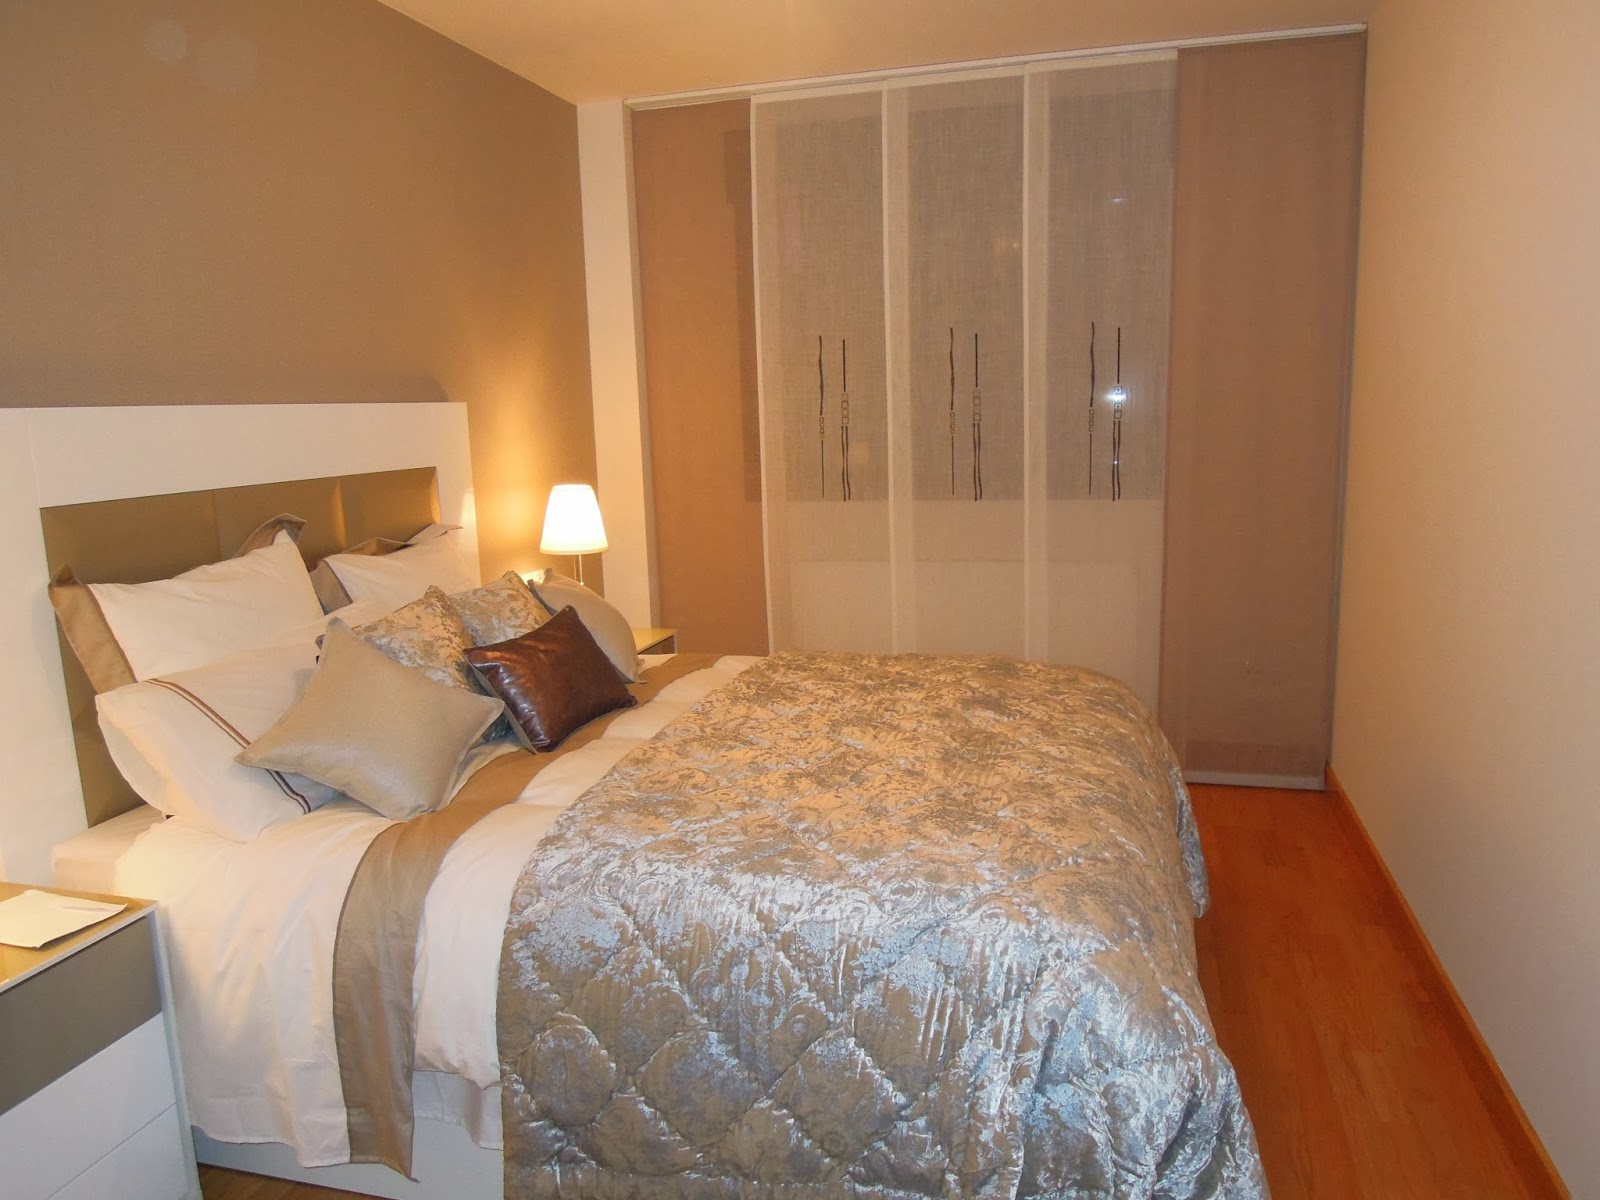 Fotos de Cortinas: Dormitorio Principal 2014